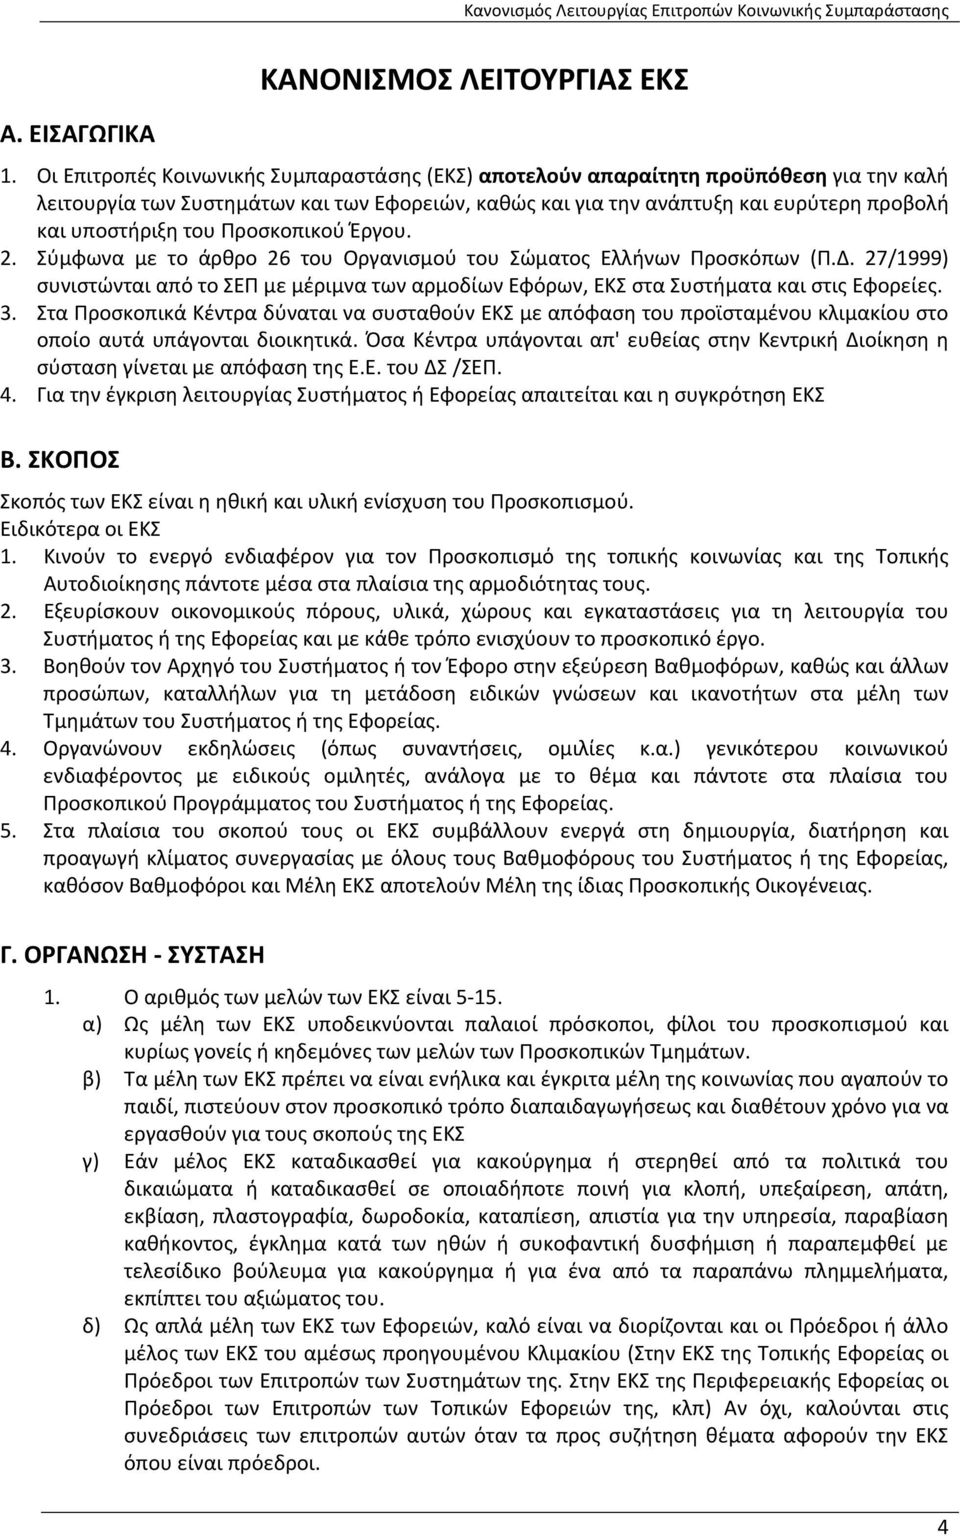 Προσκοπικού Έργου. 2. Σύμφωνα με το άρθρο 26 του Οργανισμού του Σώματος Ελλήνων Προσκόπων (Π.Δ. 27/1999) συνιστώνται από το ΣΕΠ με μέριμνα των αρμοδίων Εφόρων, ΕΚΣ στα Συστήματα και στις Εφορείες. 3.